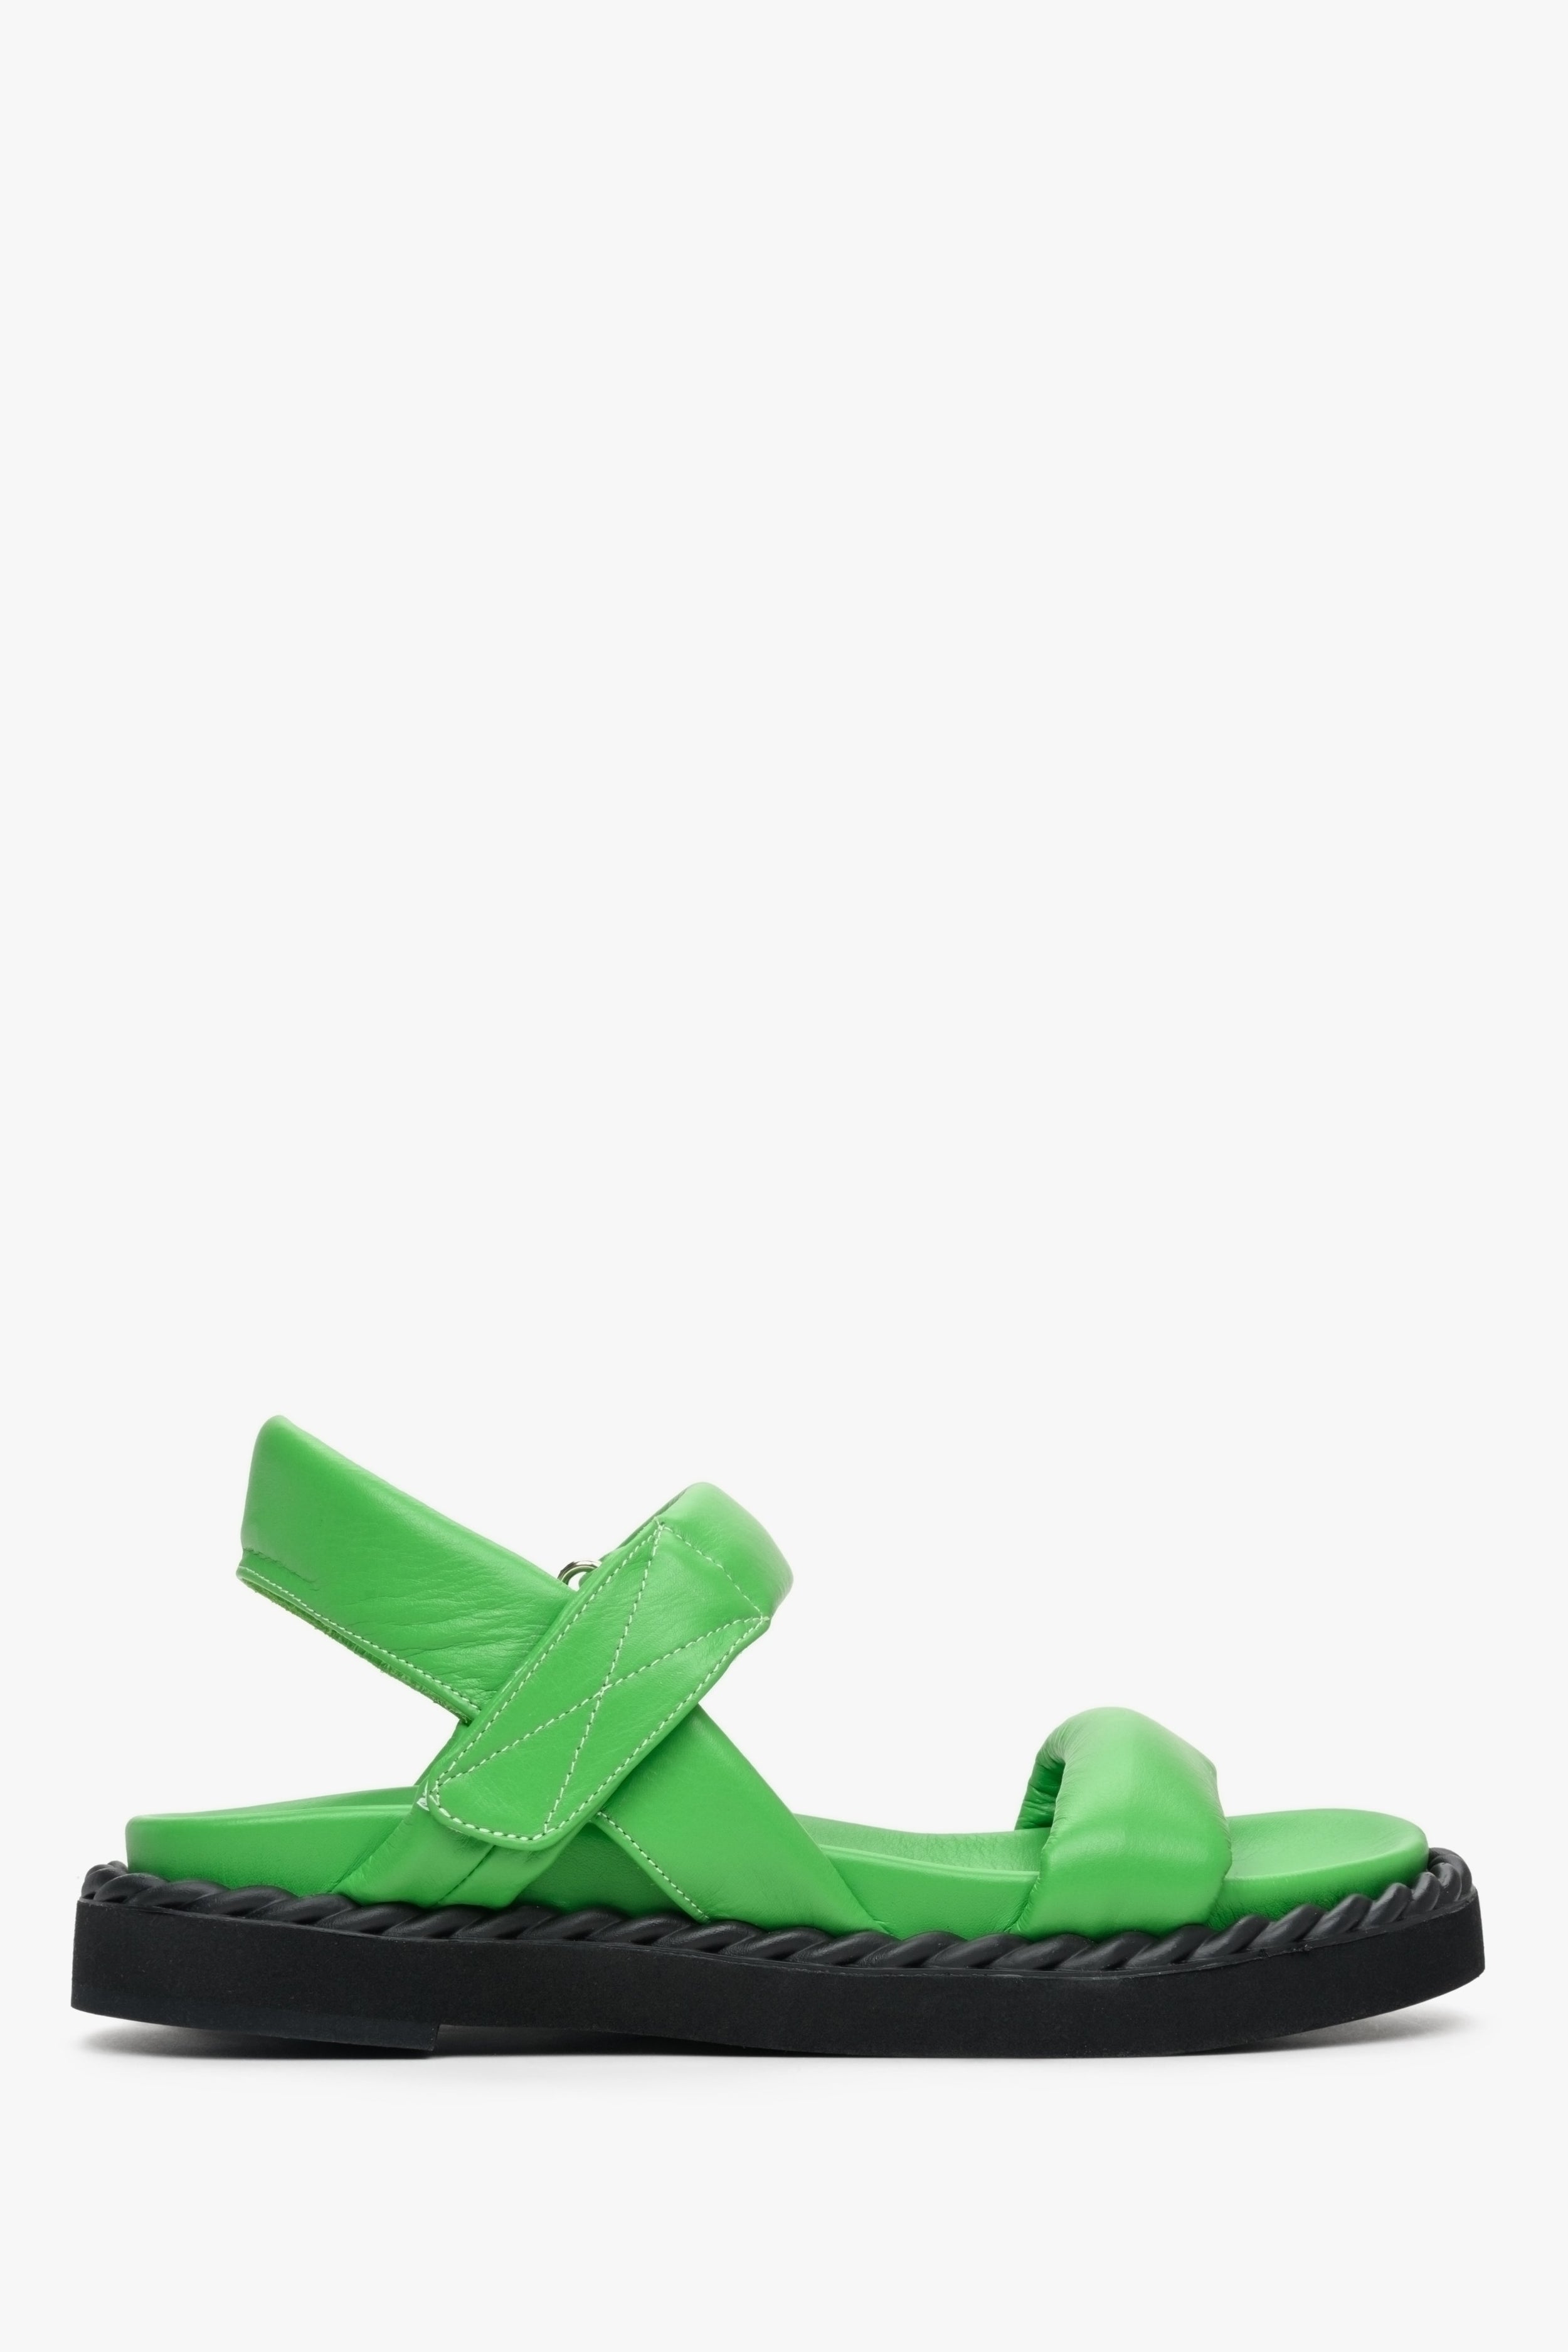 Estro: Zielone sandały damskie ze skóry naturalnej na lato